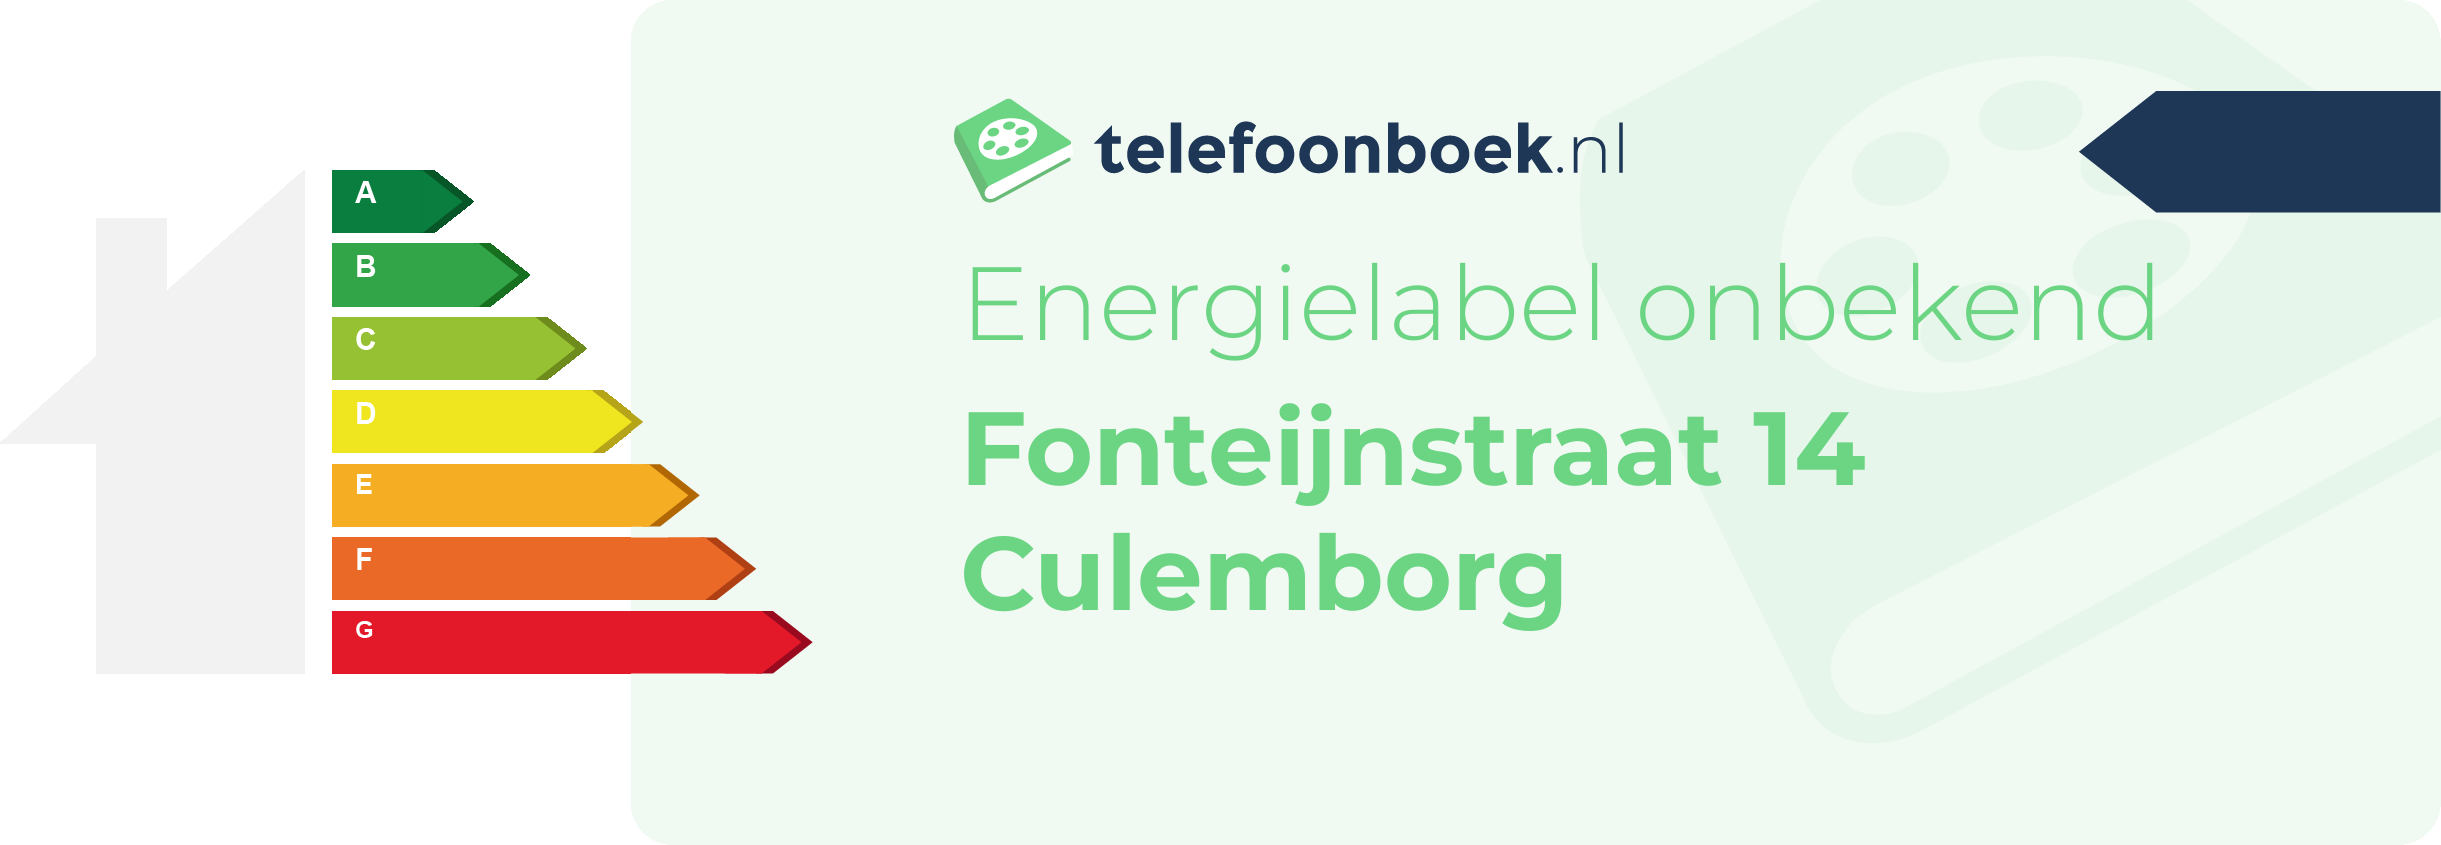 Energielabel Fonteijnstraat 14 Culemborg